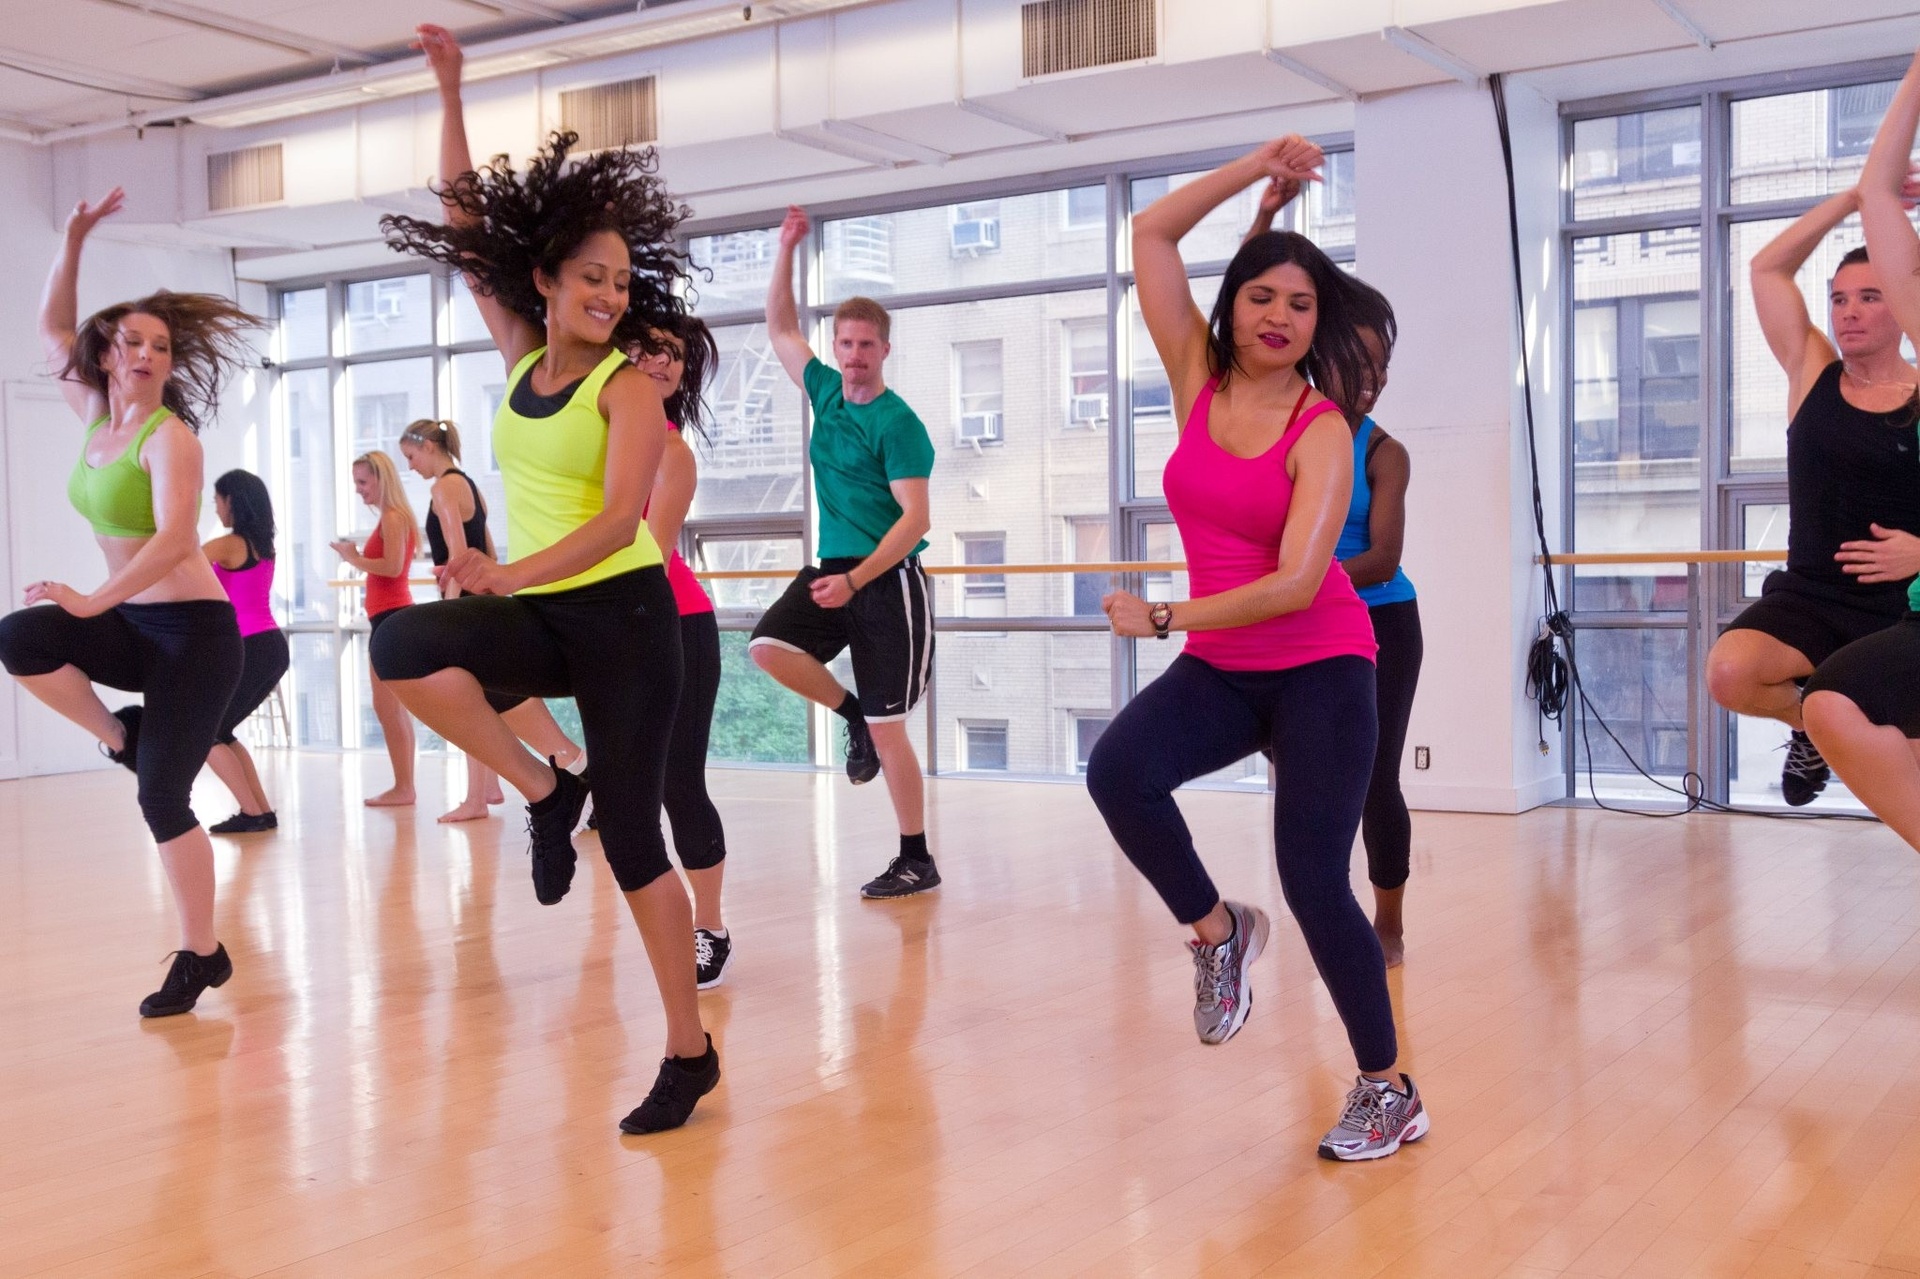 Степ аэробика — один из самых популярных видов фитнеса для групповых тренировок Она невероятно полезна для тела, но популярна не только по этой причине, а поскольку отличается многообразием хореографических связок